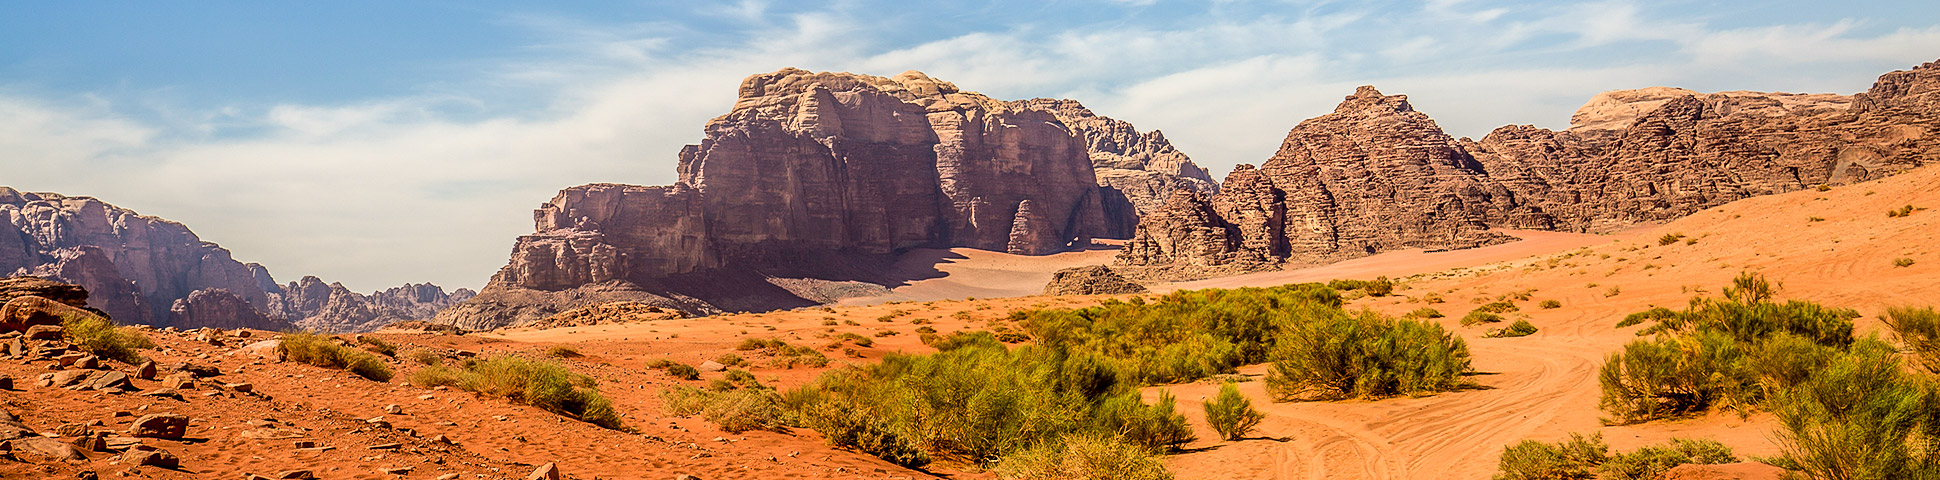 Beautiful panoramic view of Jordanian desert as seen on guided tour in Jordan